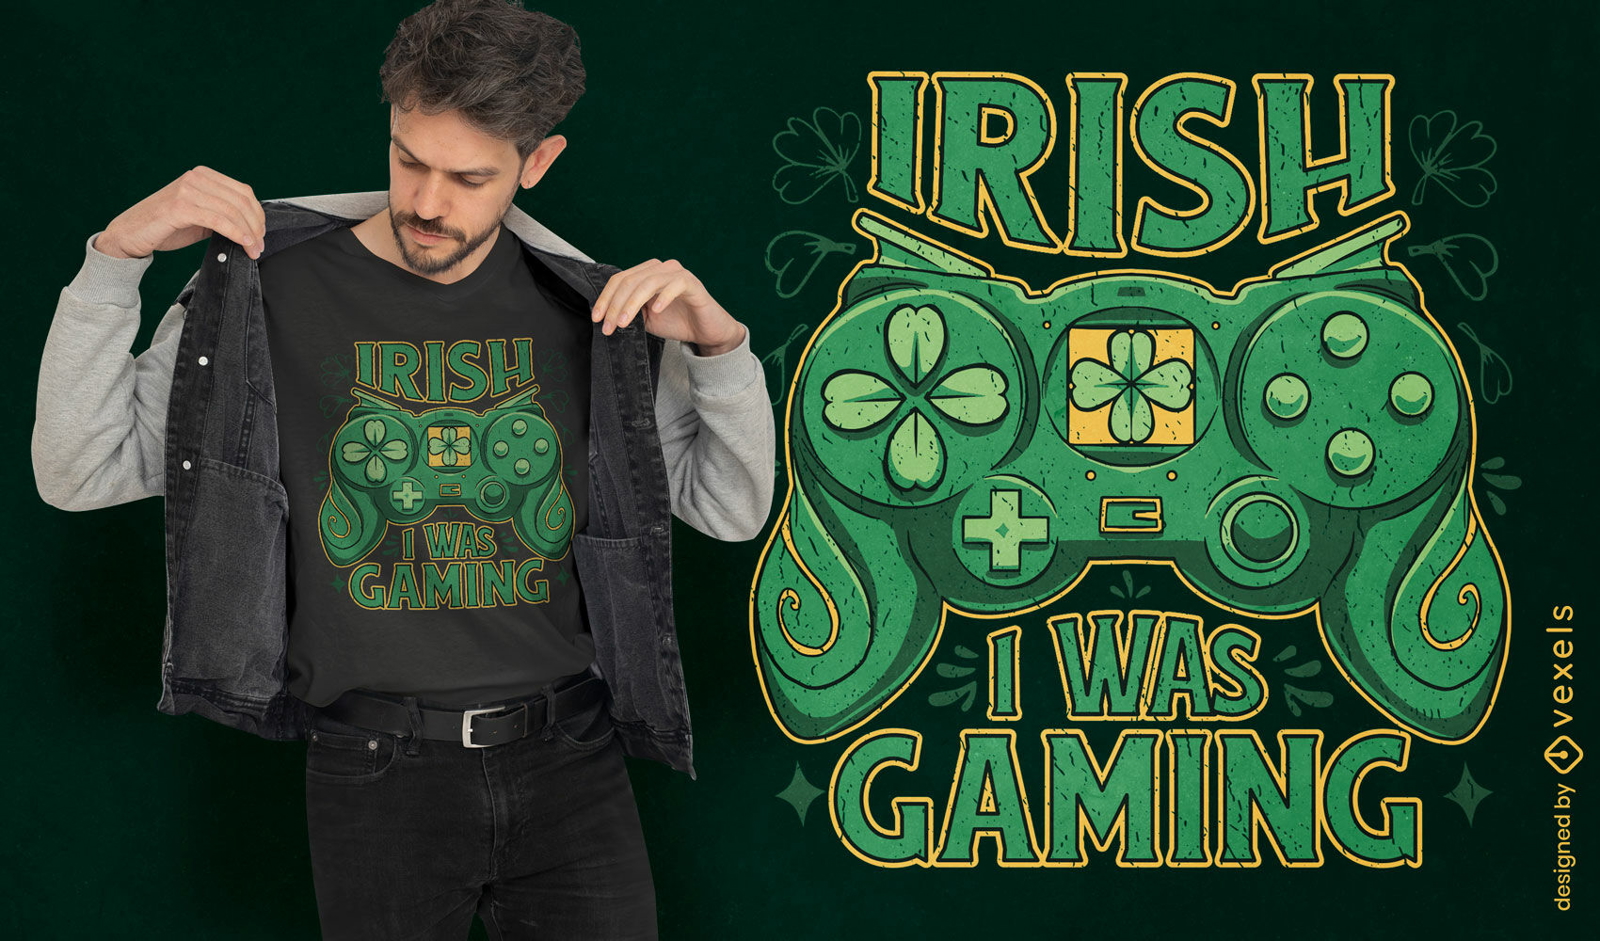 Irish gaming joystick t-shirt design